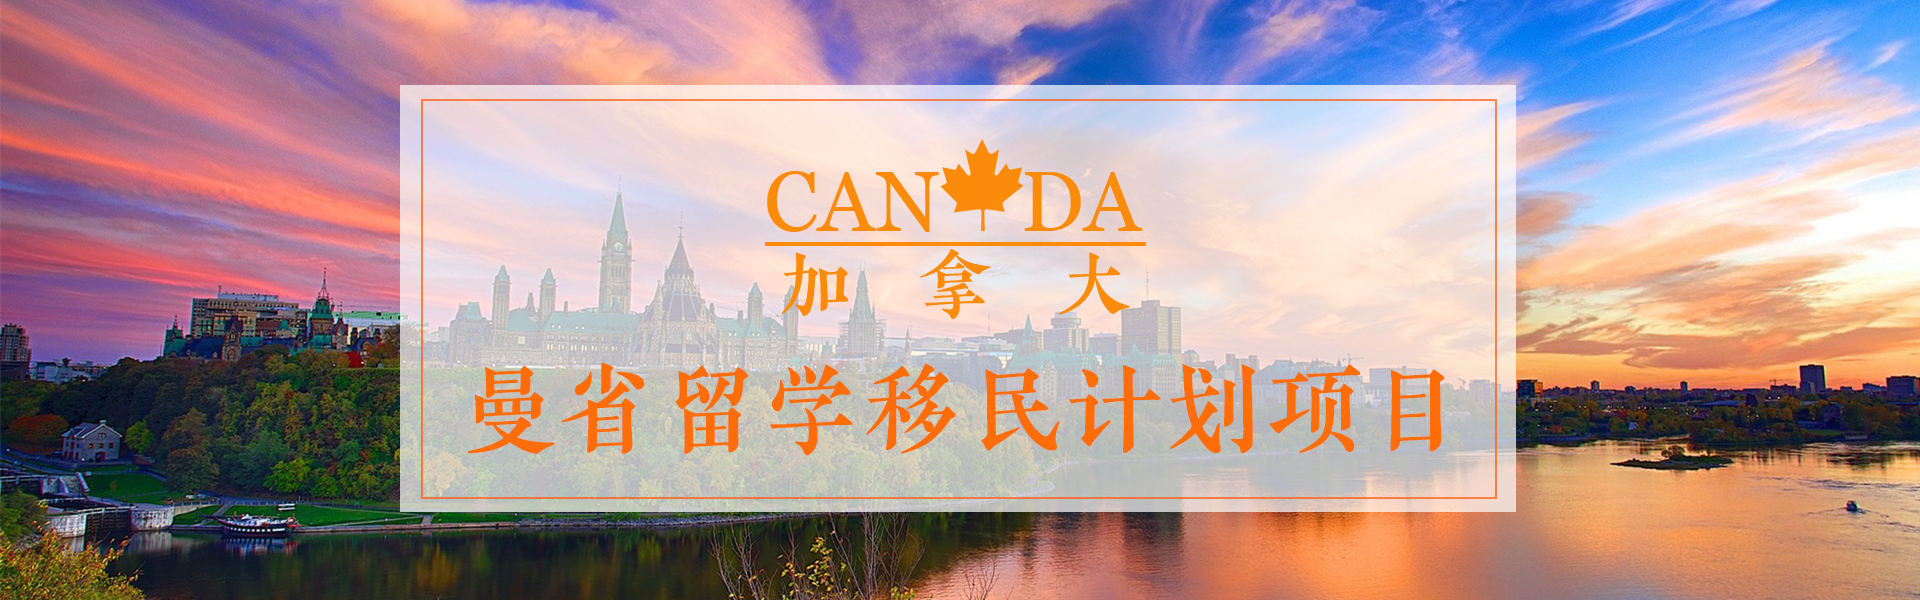 加拿大新万博app安卓下载移民